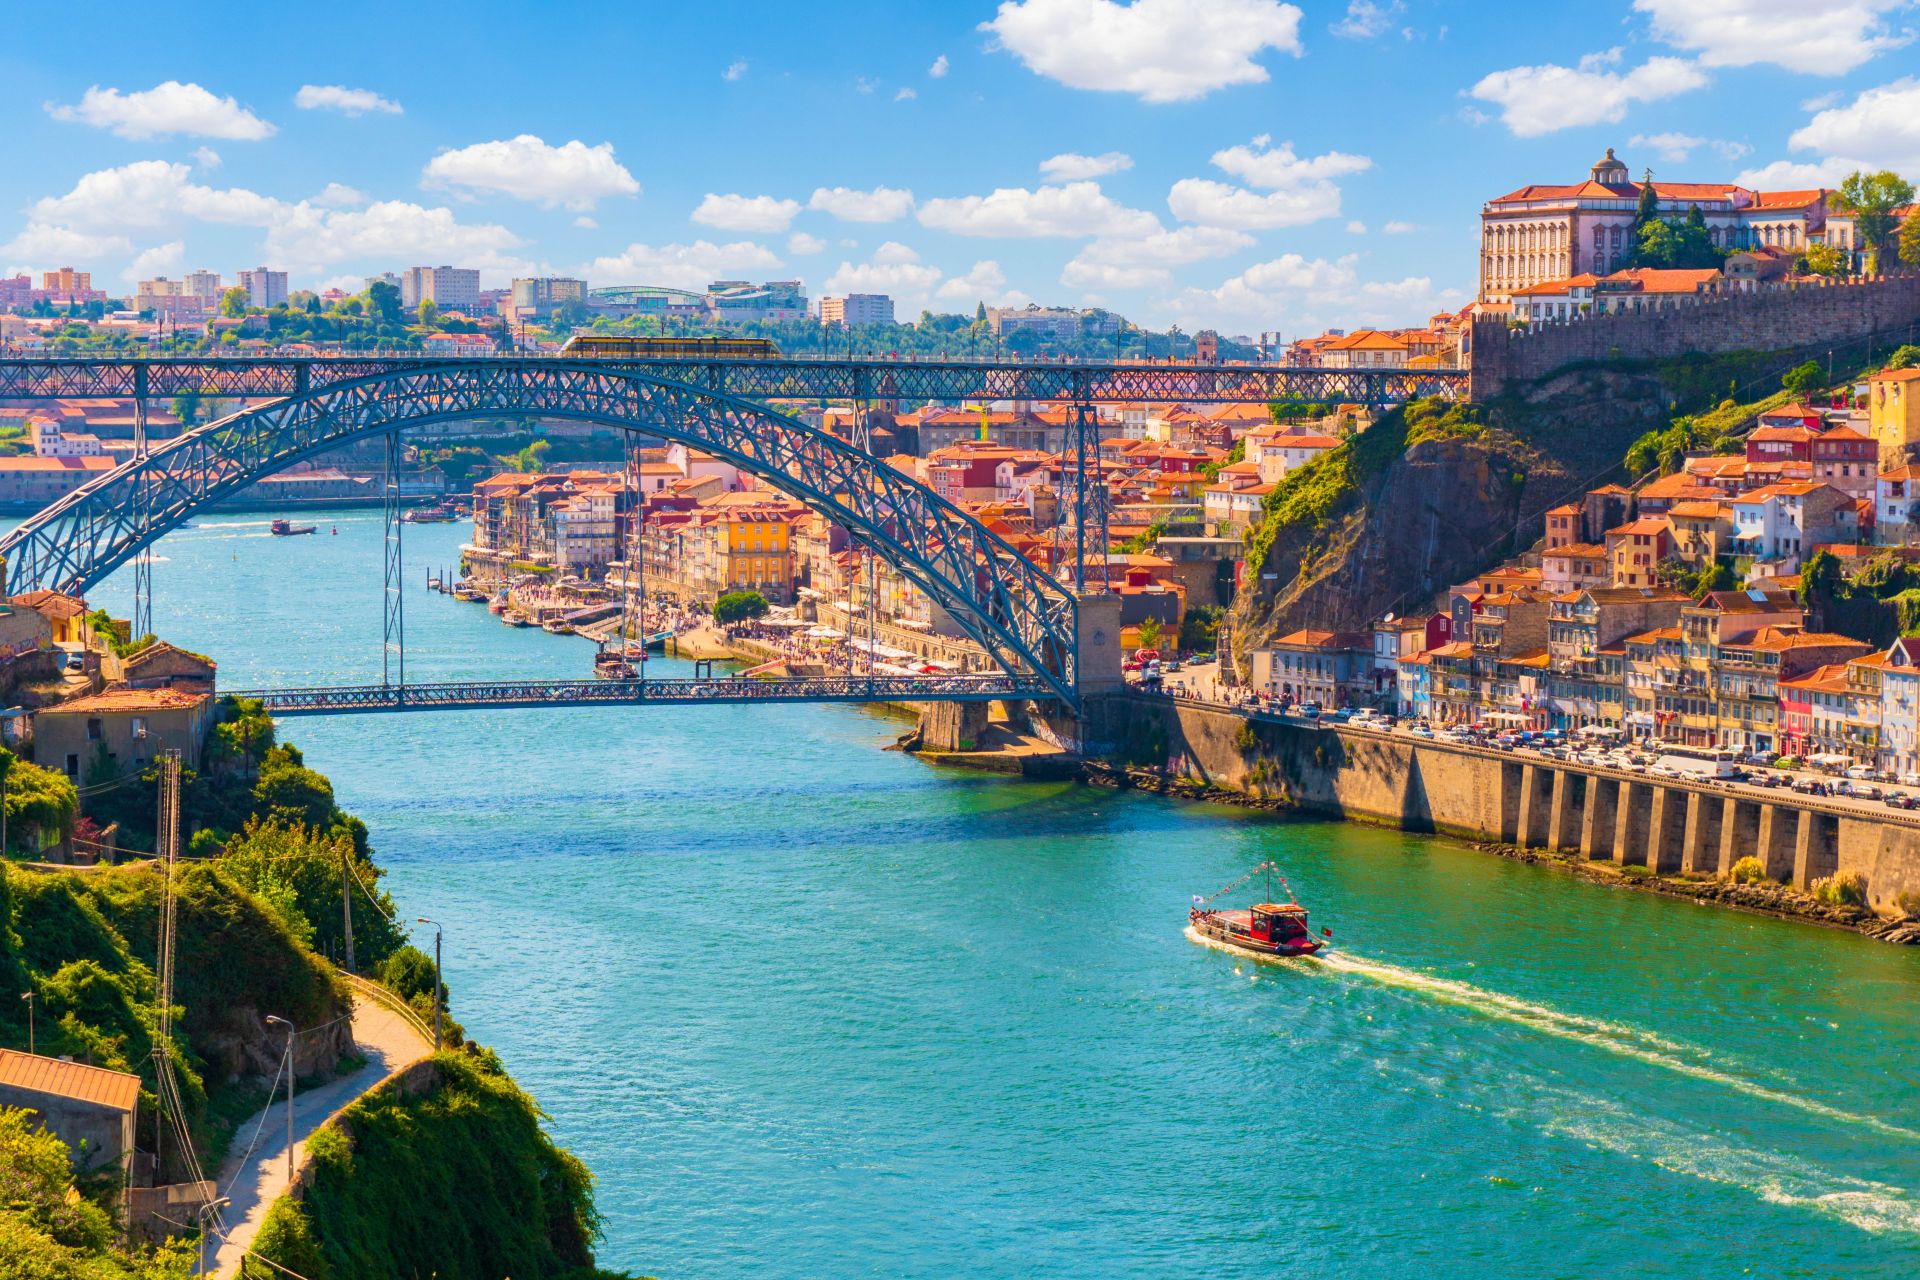 Vista del castello antico di Porto, Portogallo, con il ponte Dom Luis sul fiume Douro.